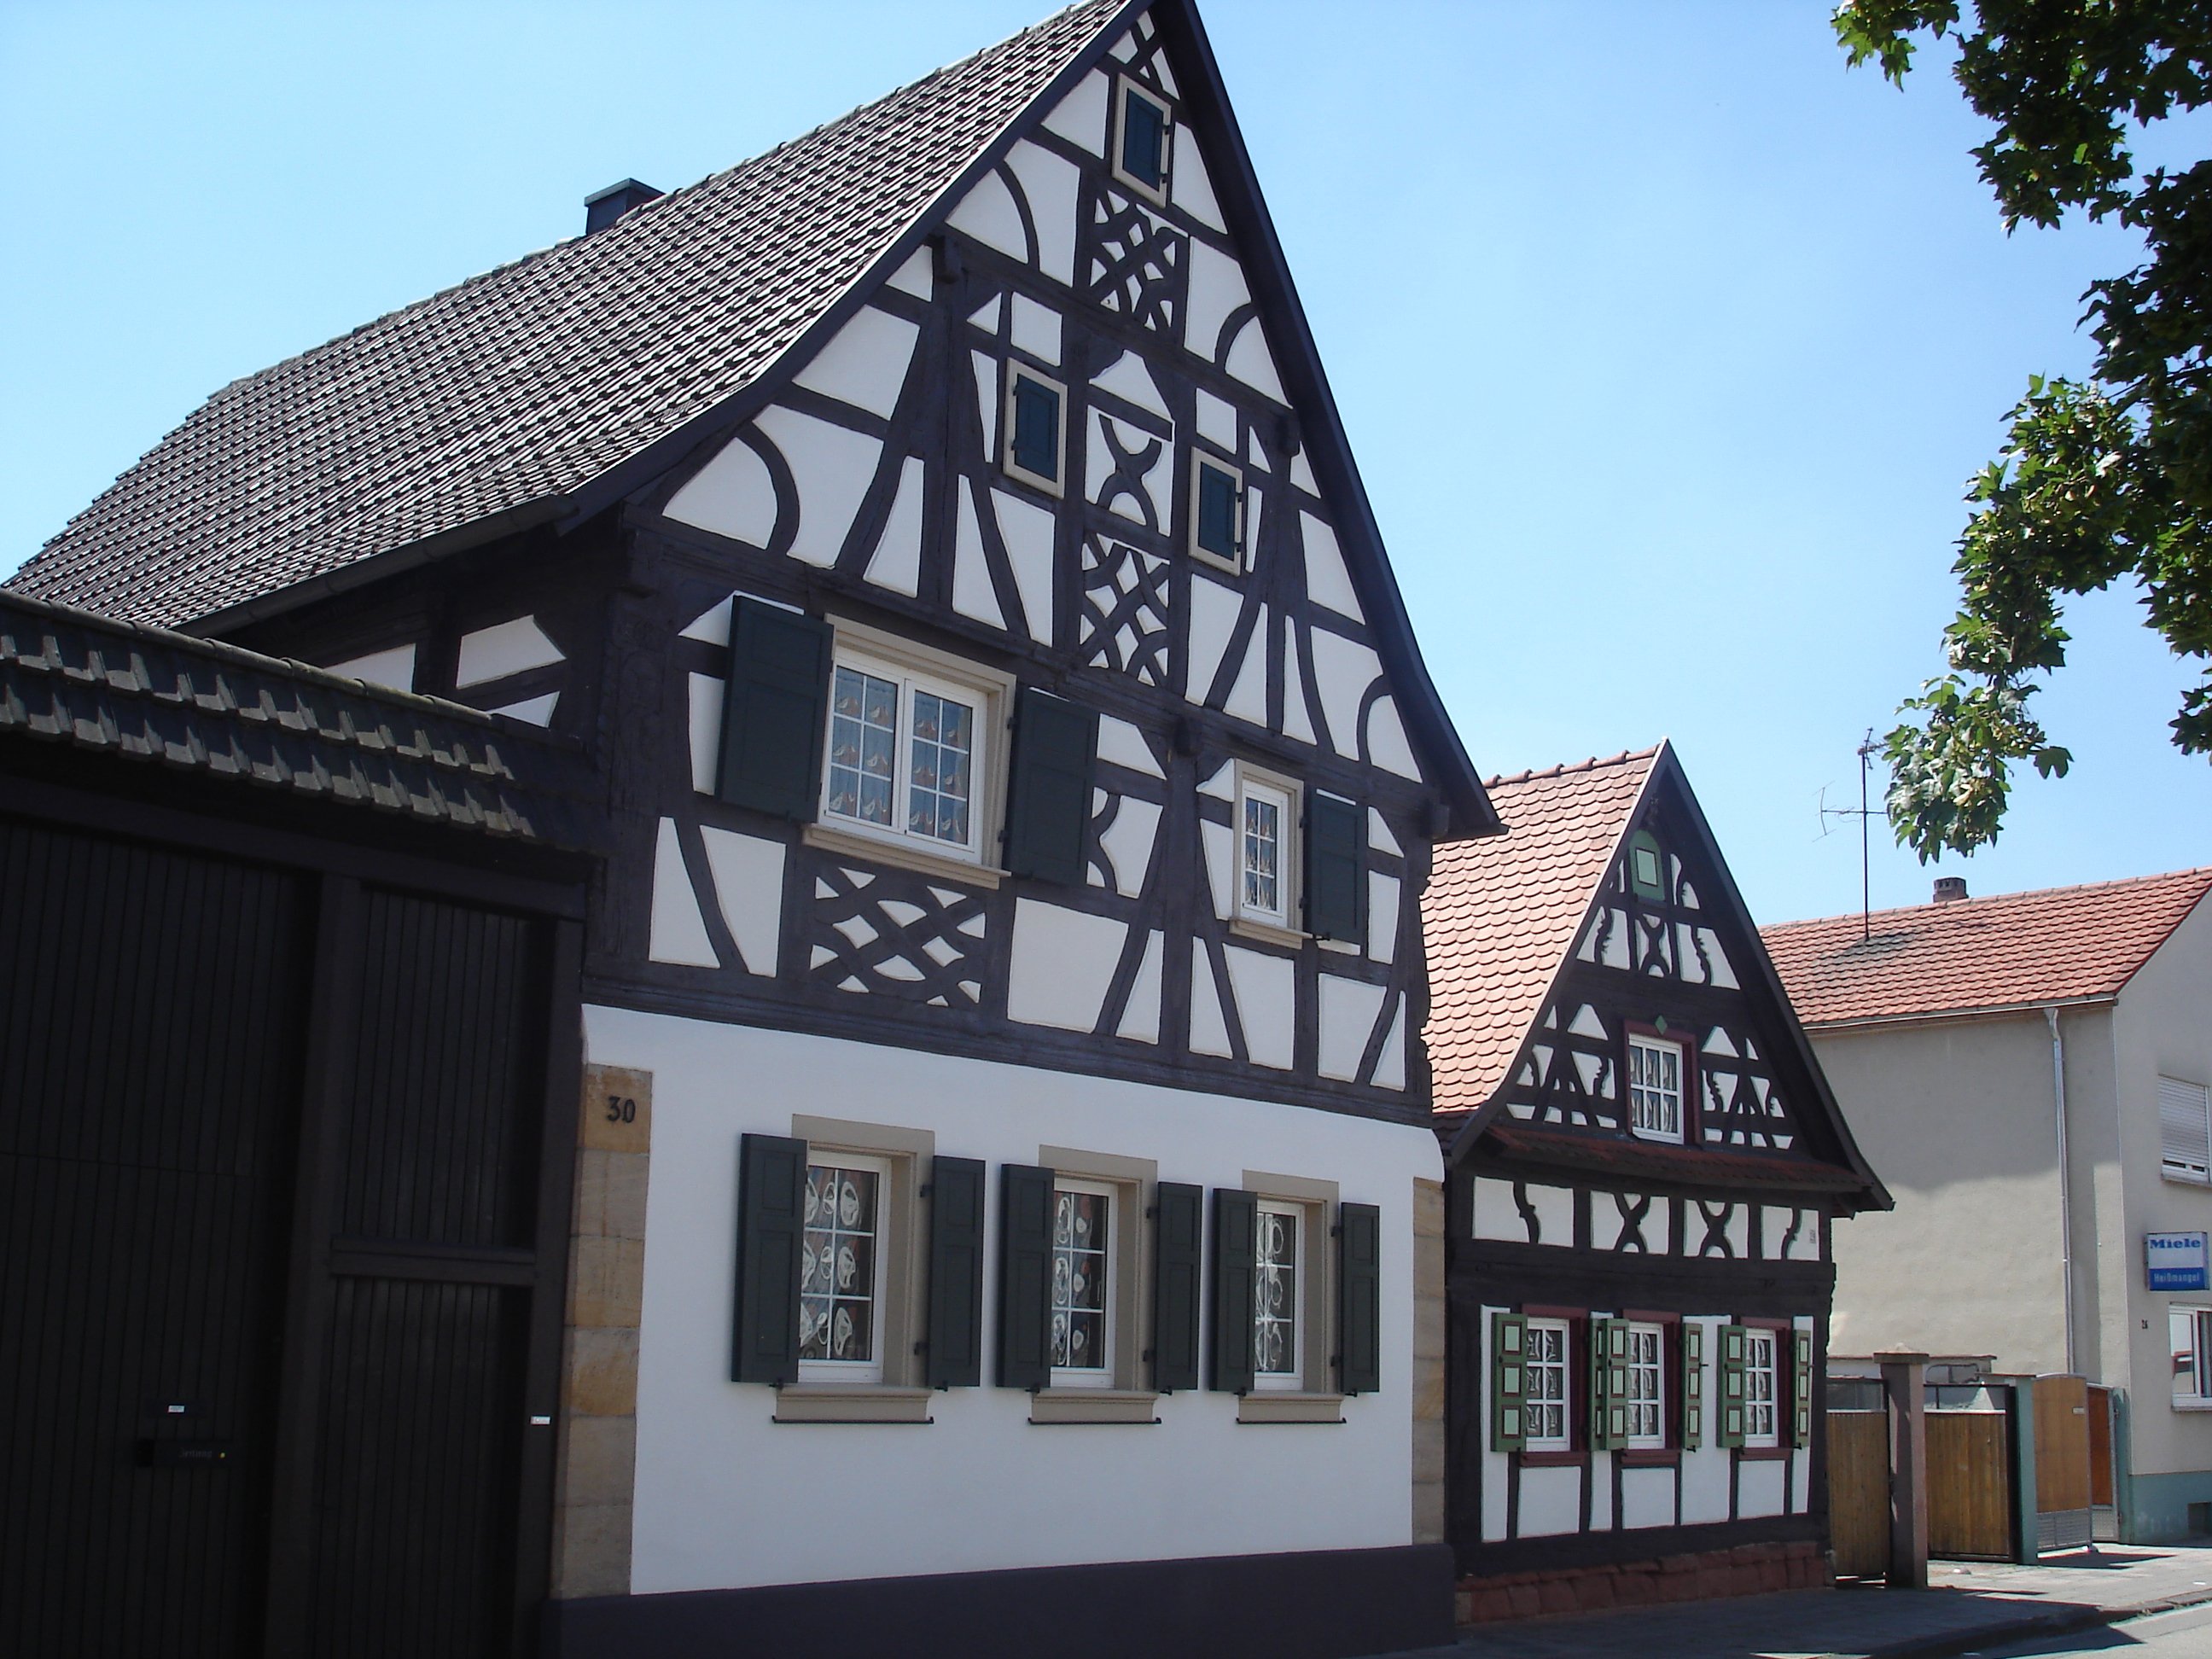 Schöne Fachwerkhäuser findet man überall in Bellheim